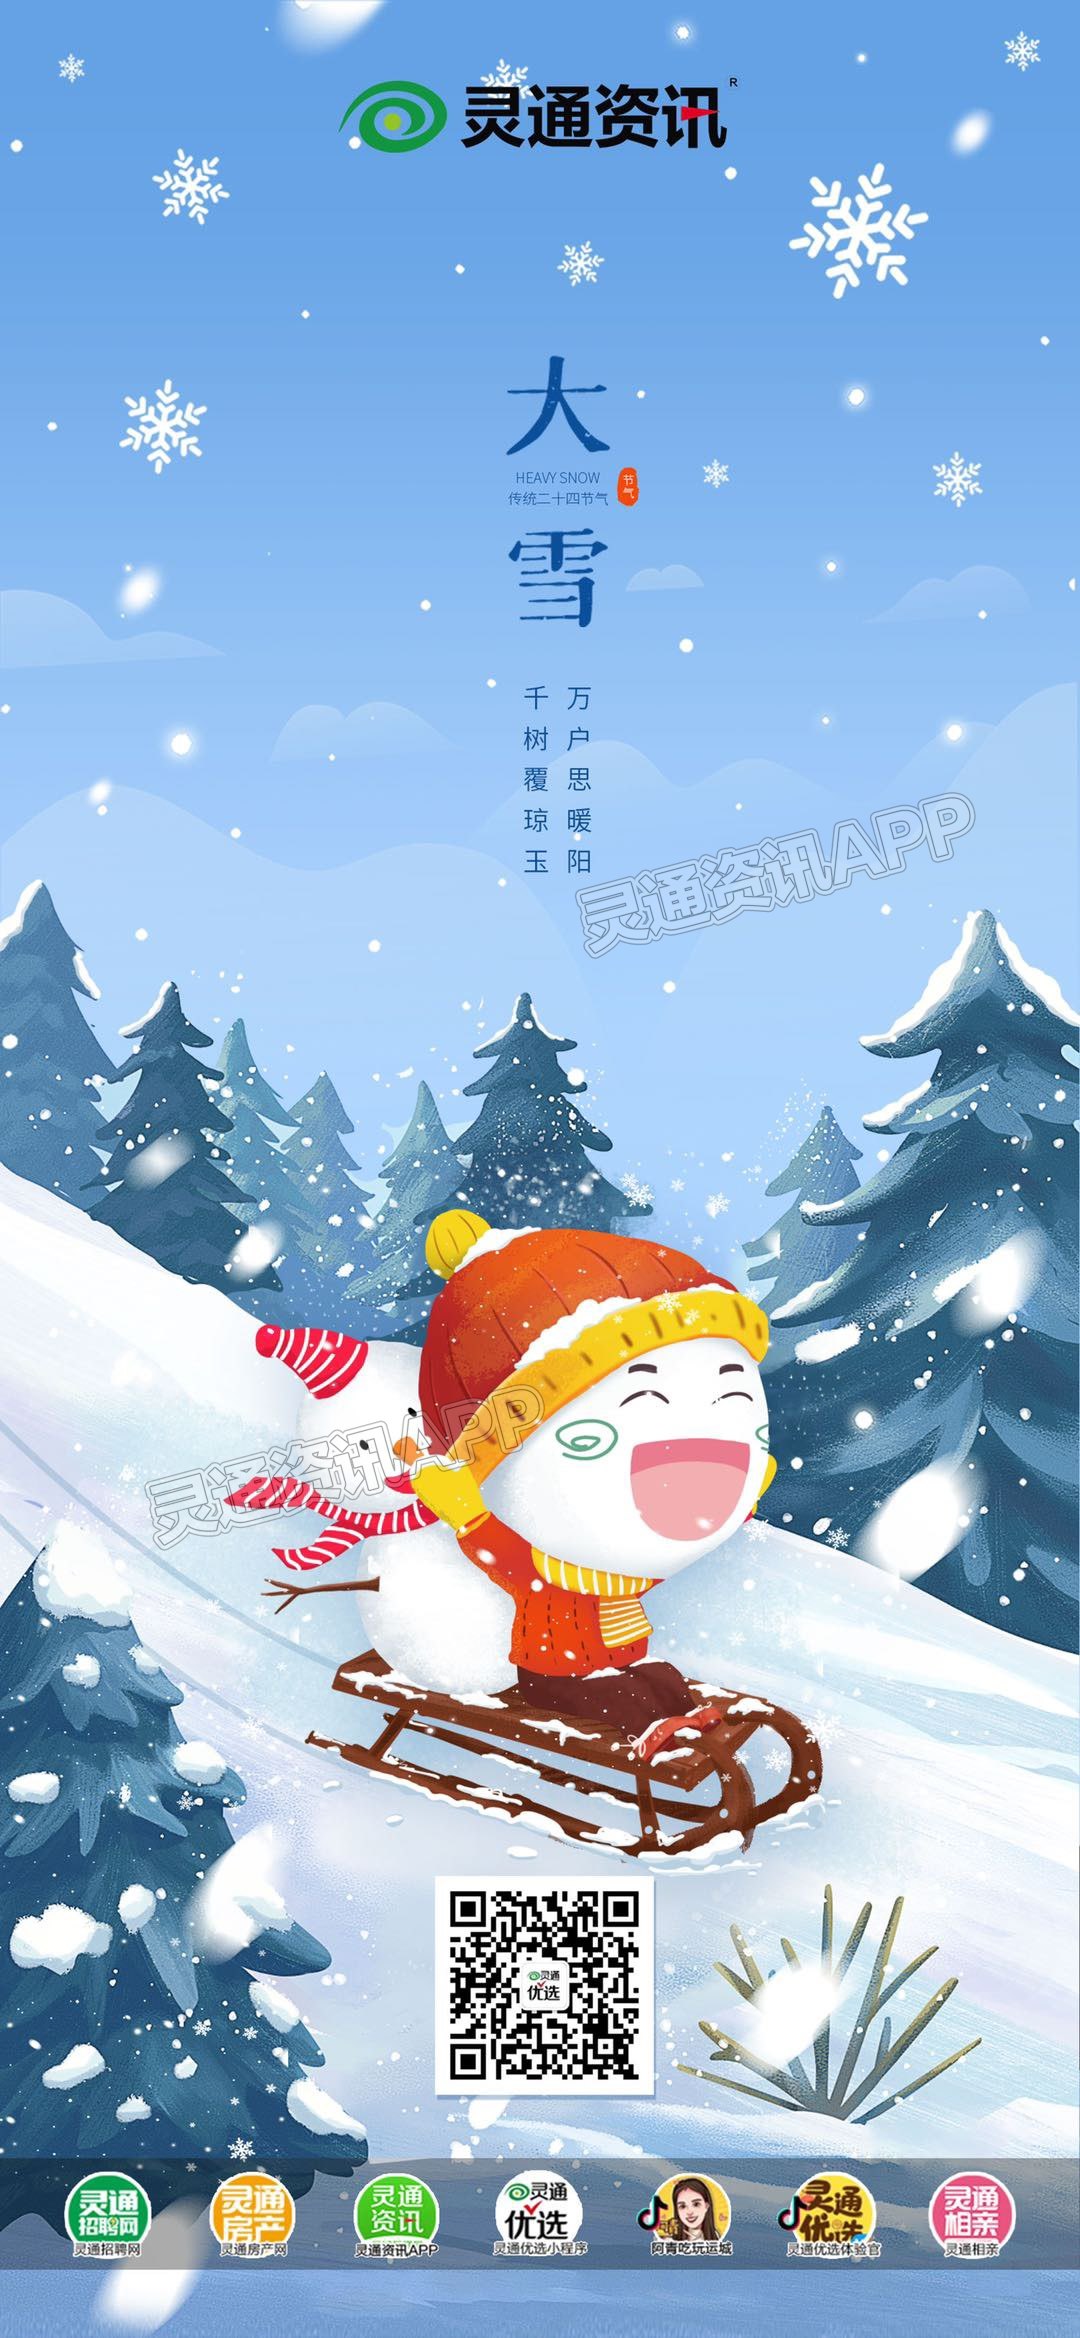 欧亿体育app下载(中国)官方网站今日大雪_欧亿体育app下载